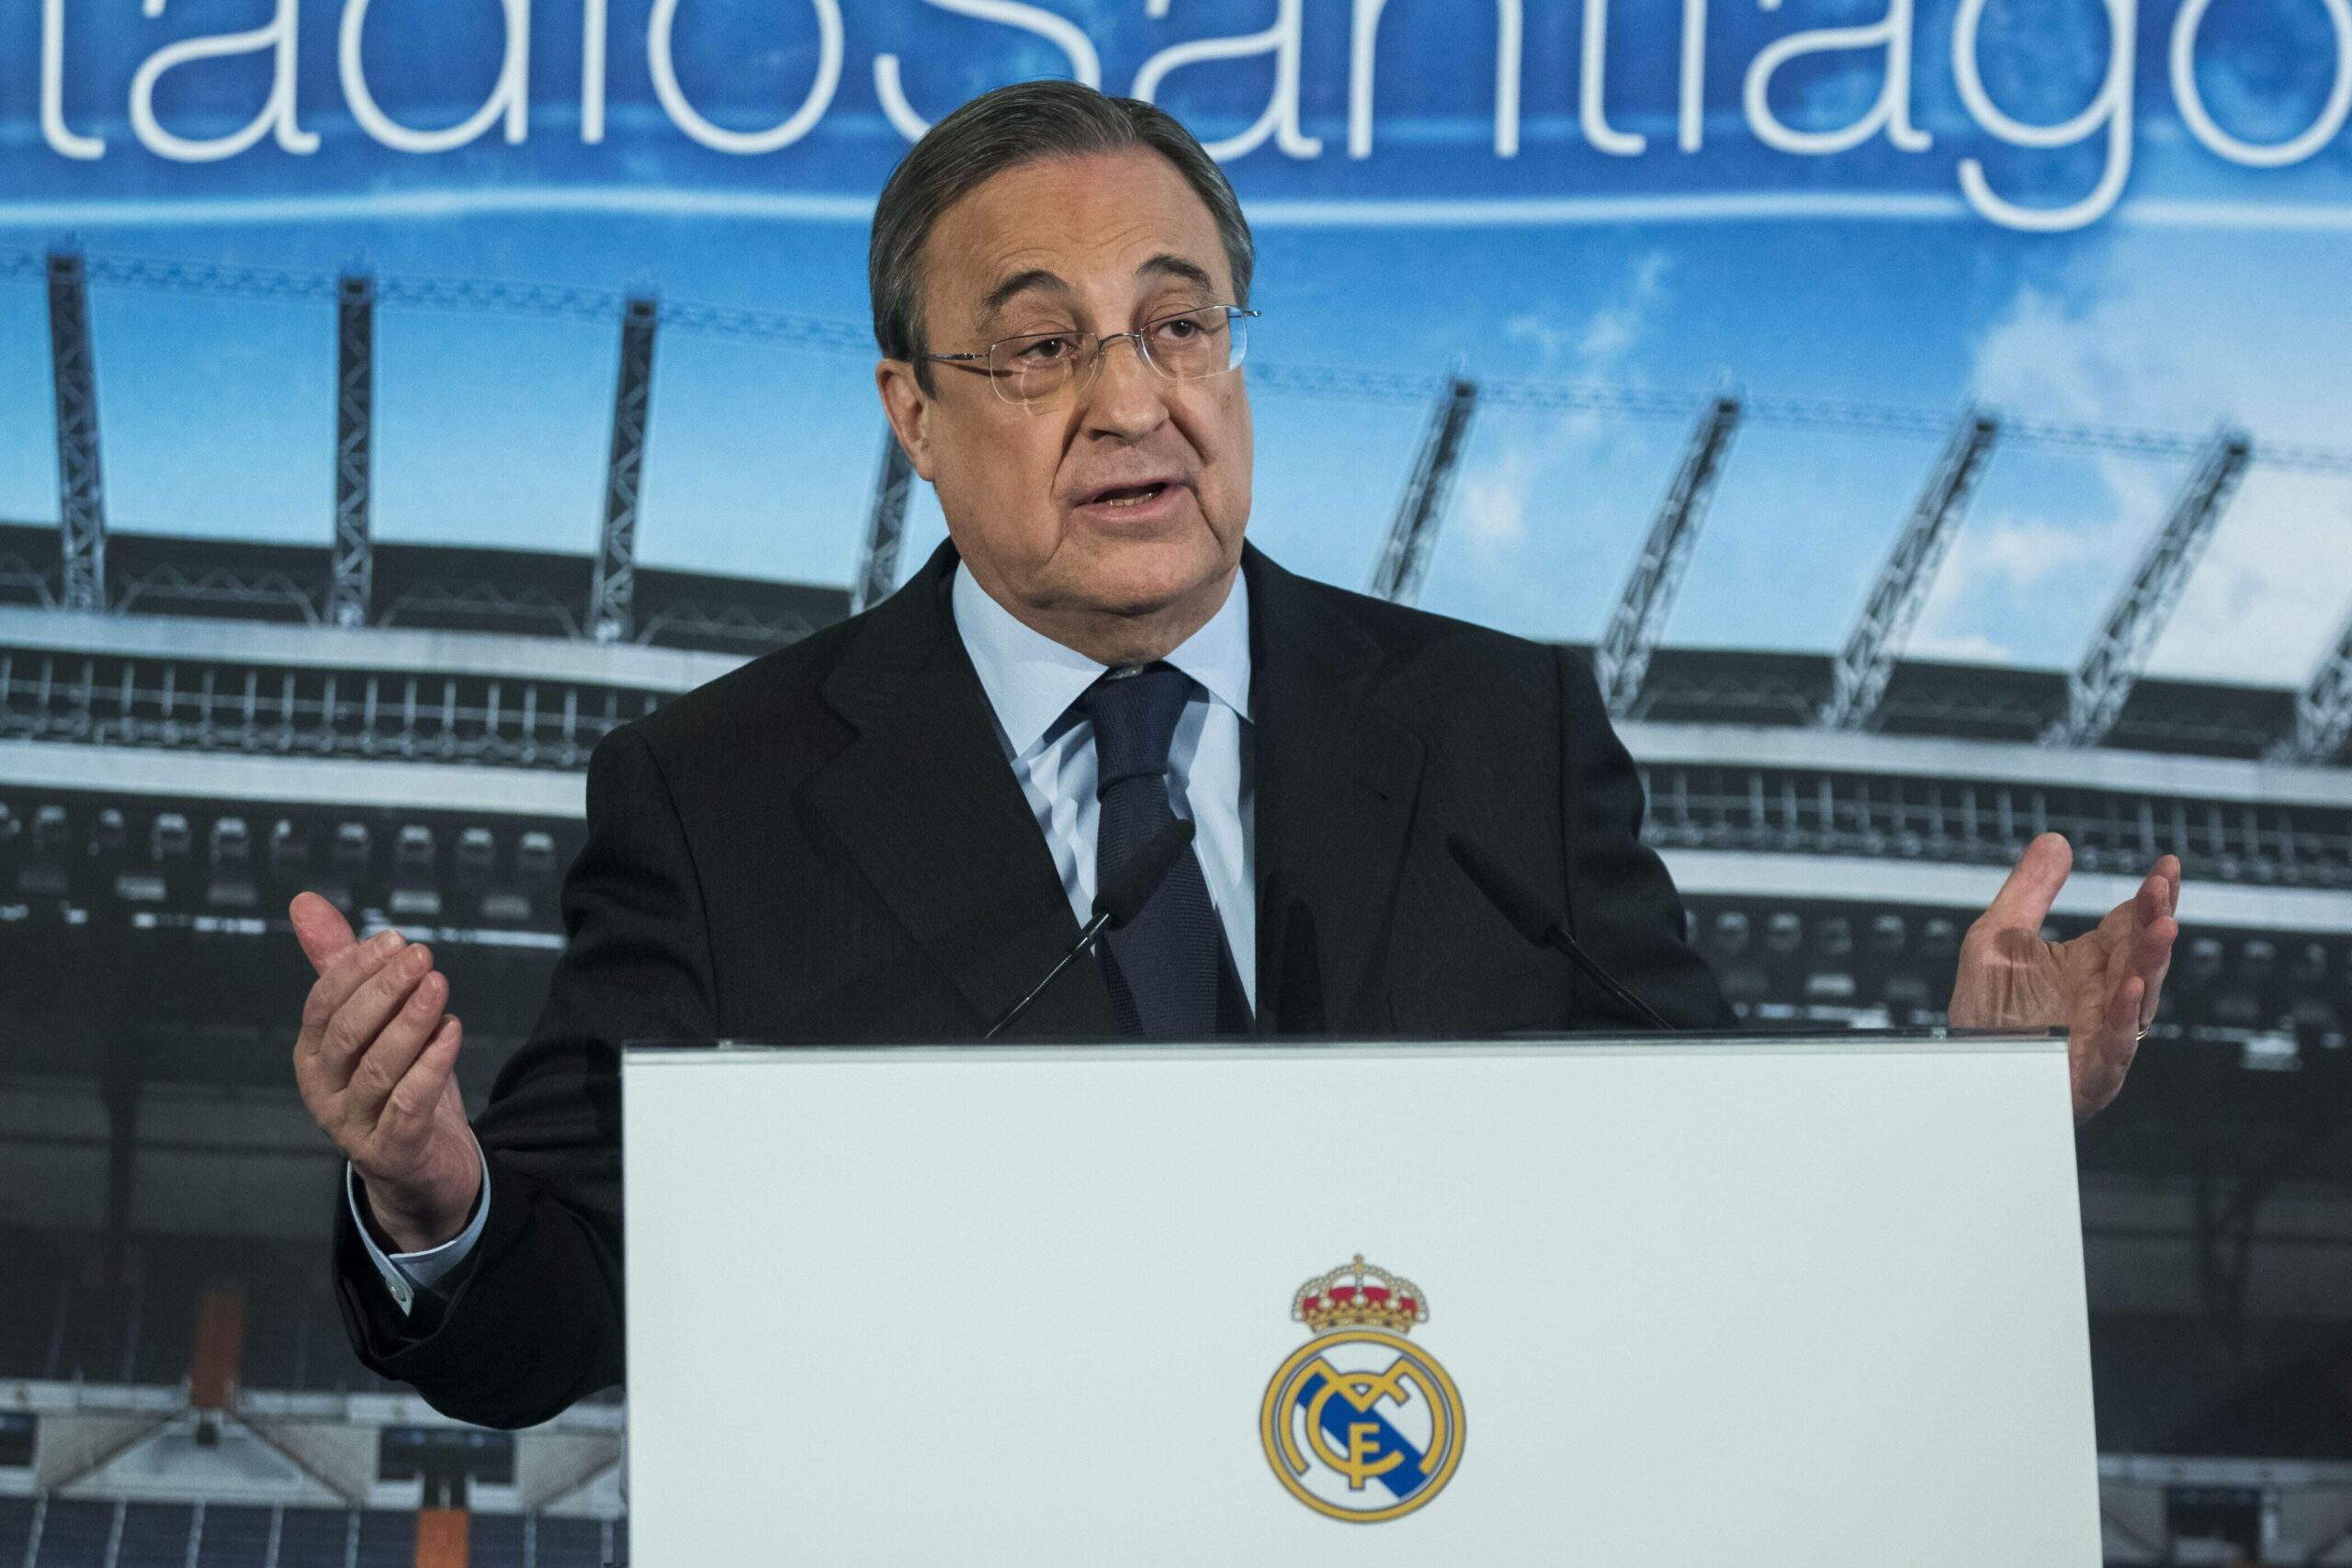 Real Madrid | Florentino Perez erneut als Präsident bestätigt – Amtszeit bis 2025